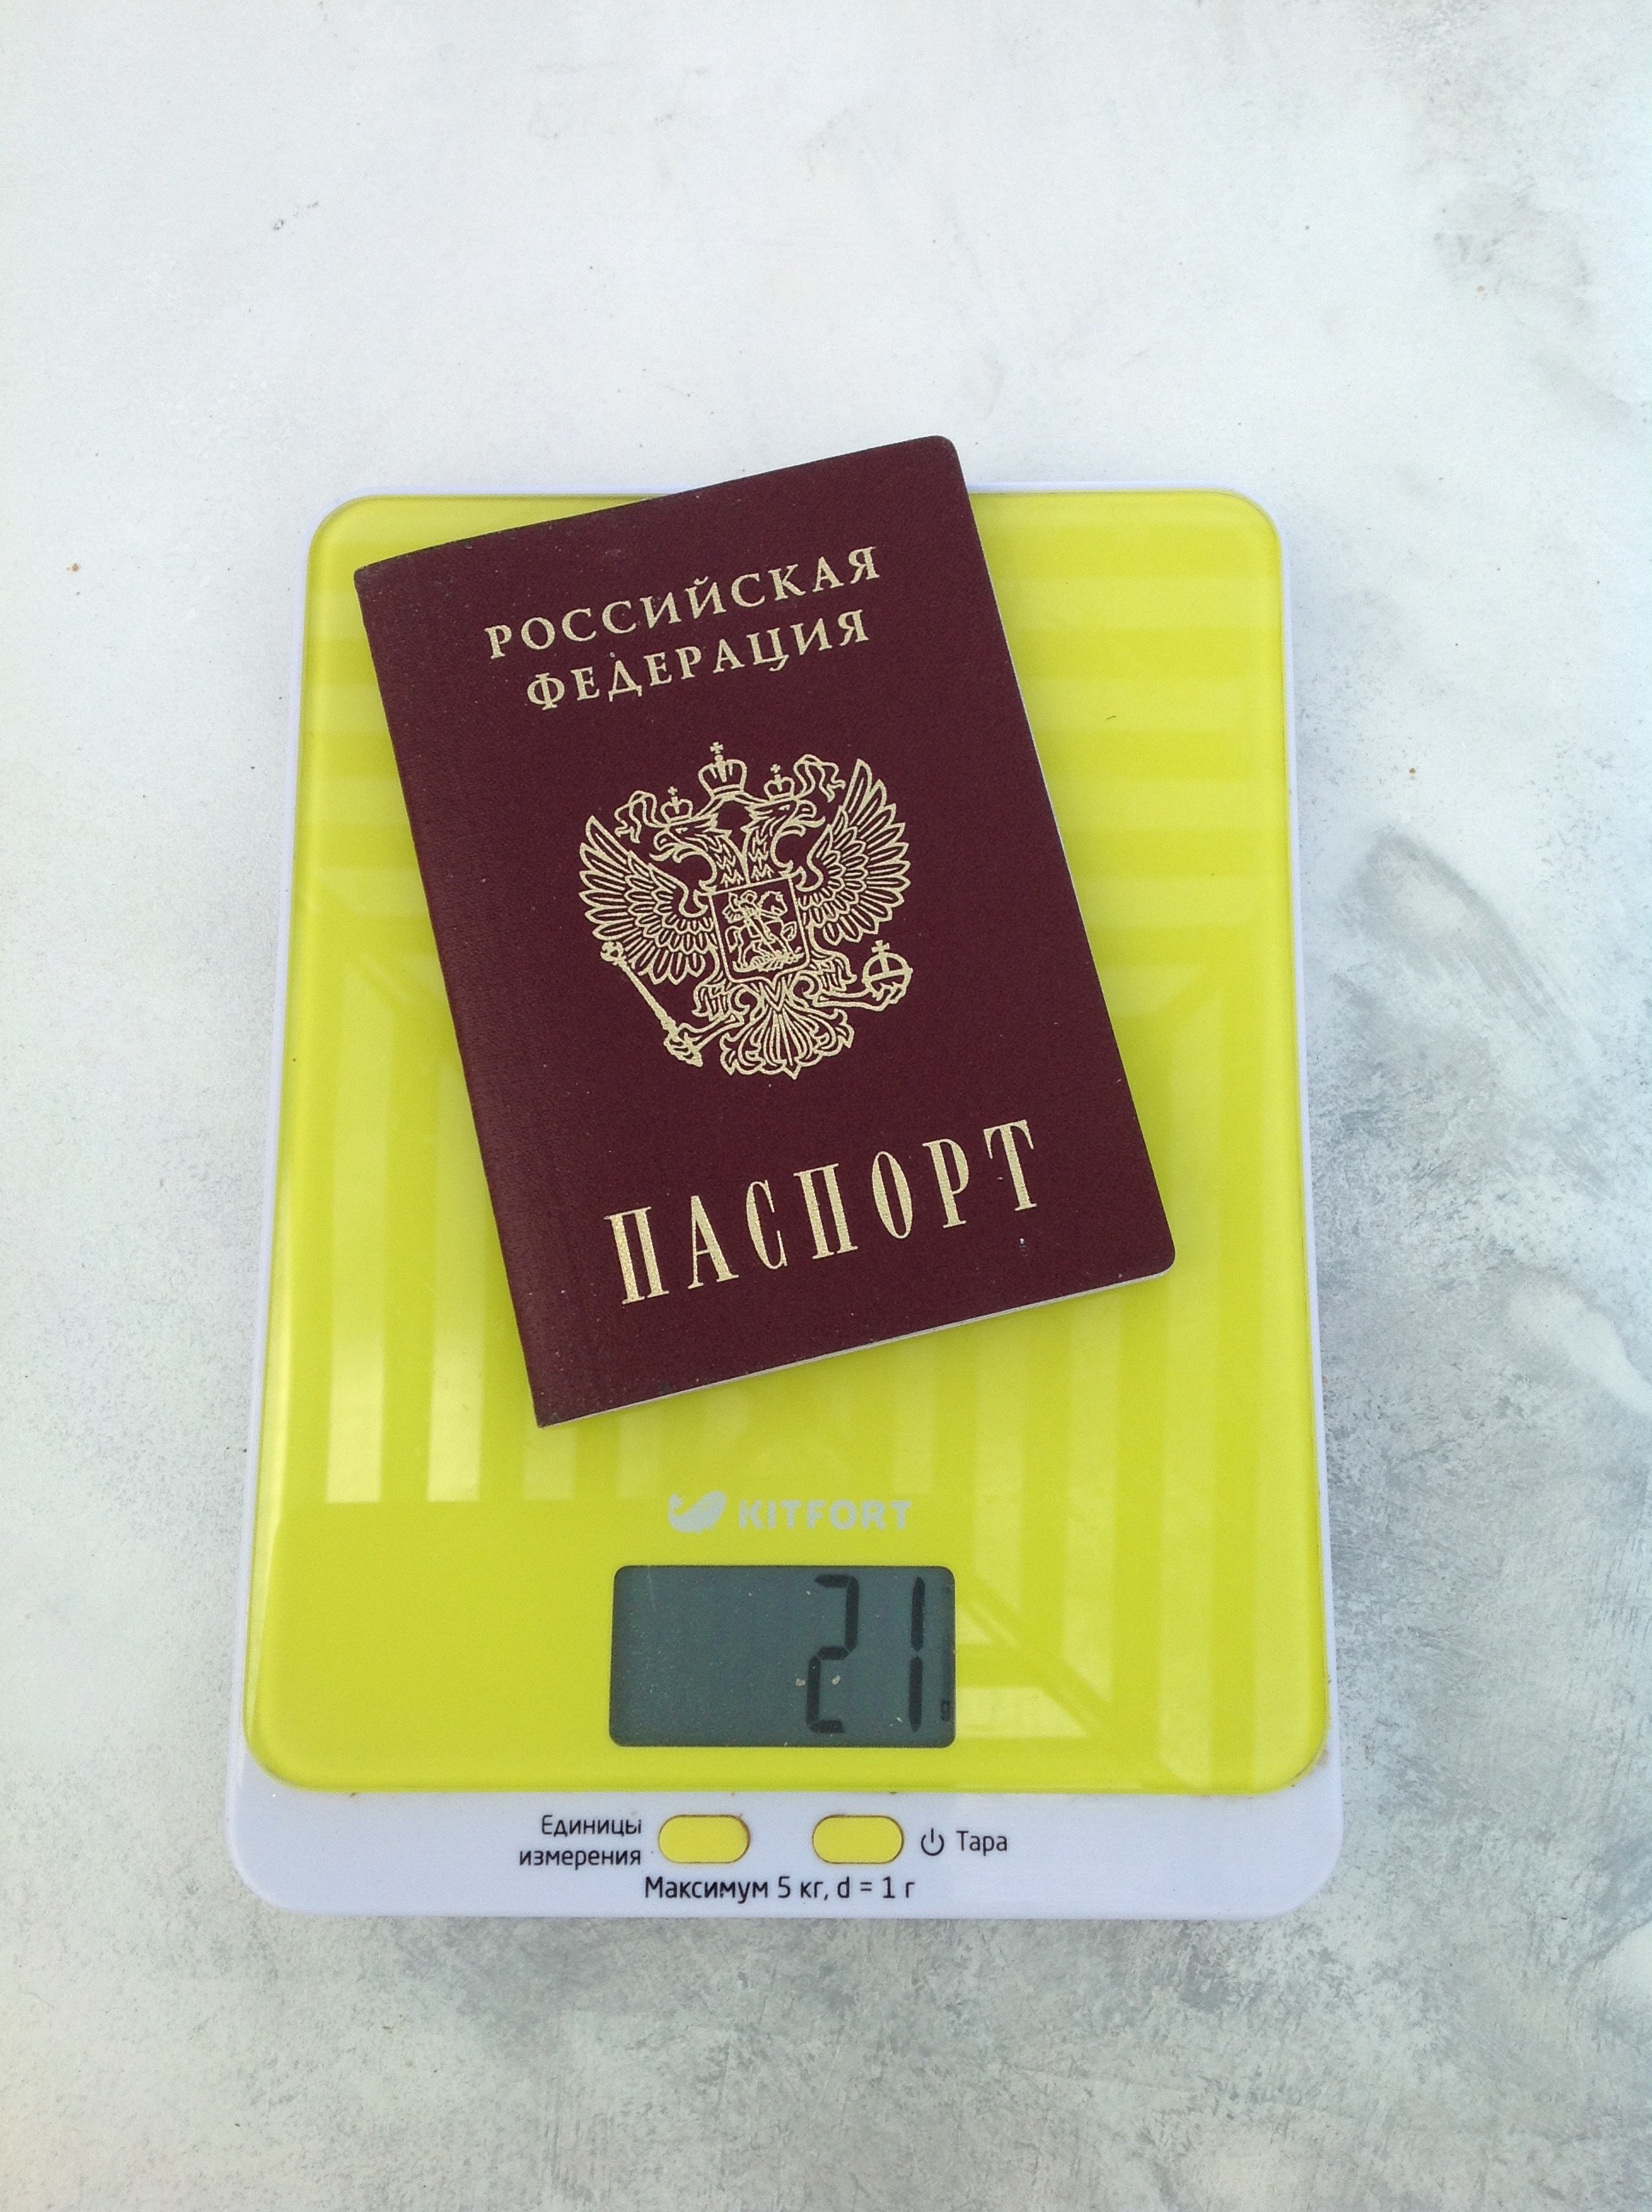 тегло на паспорта rf